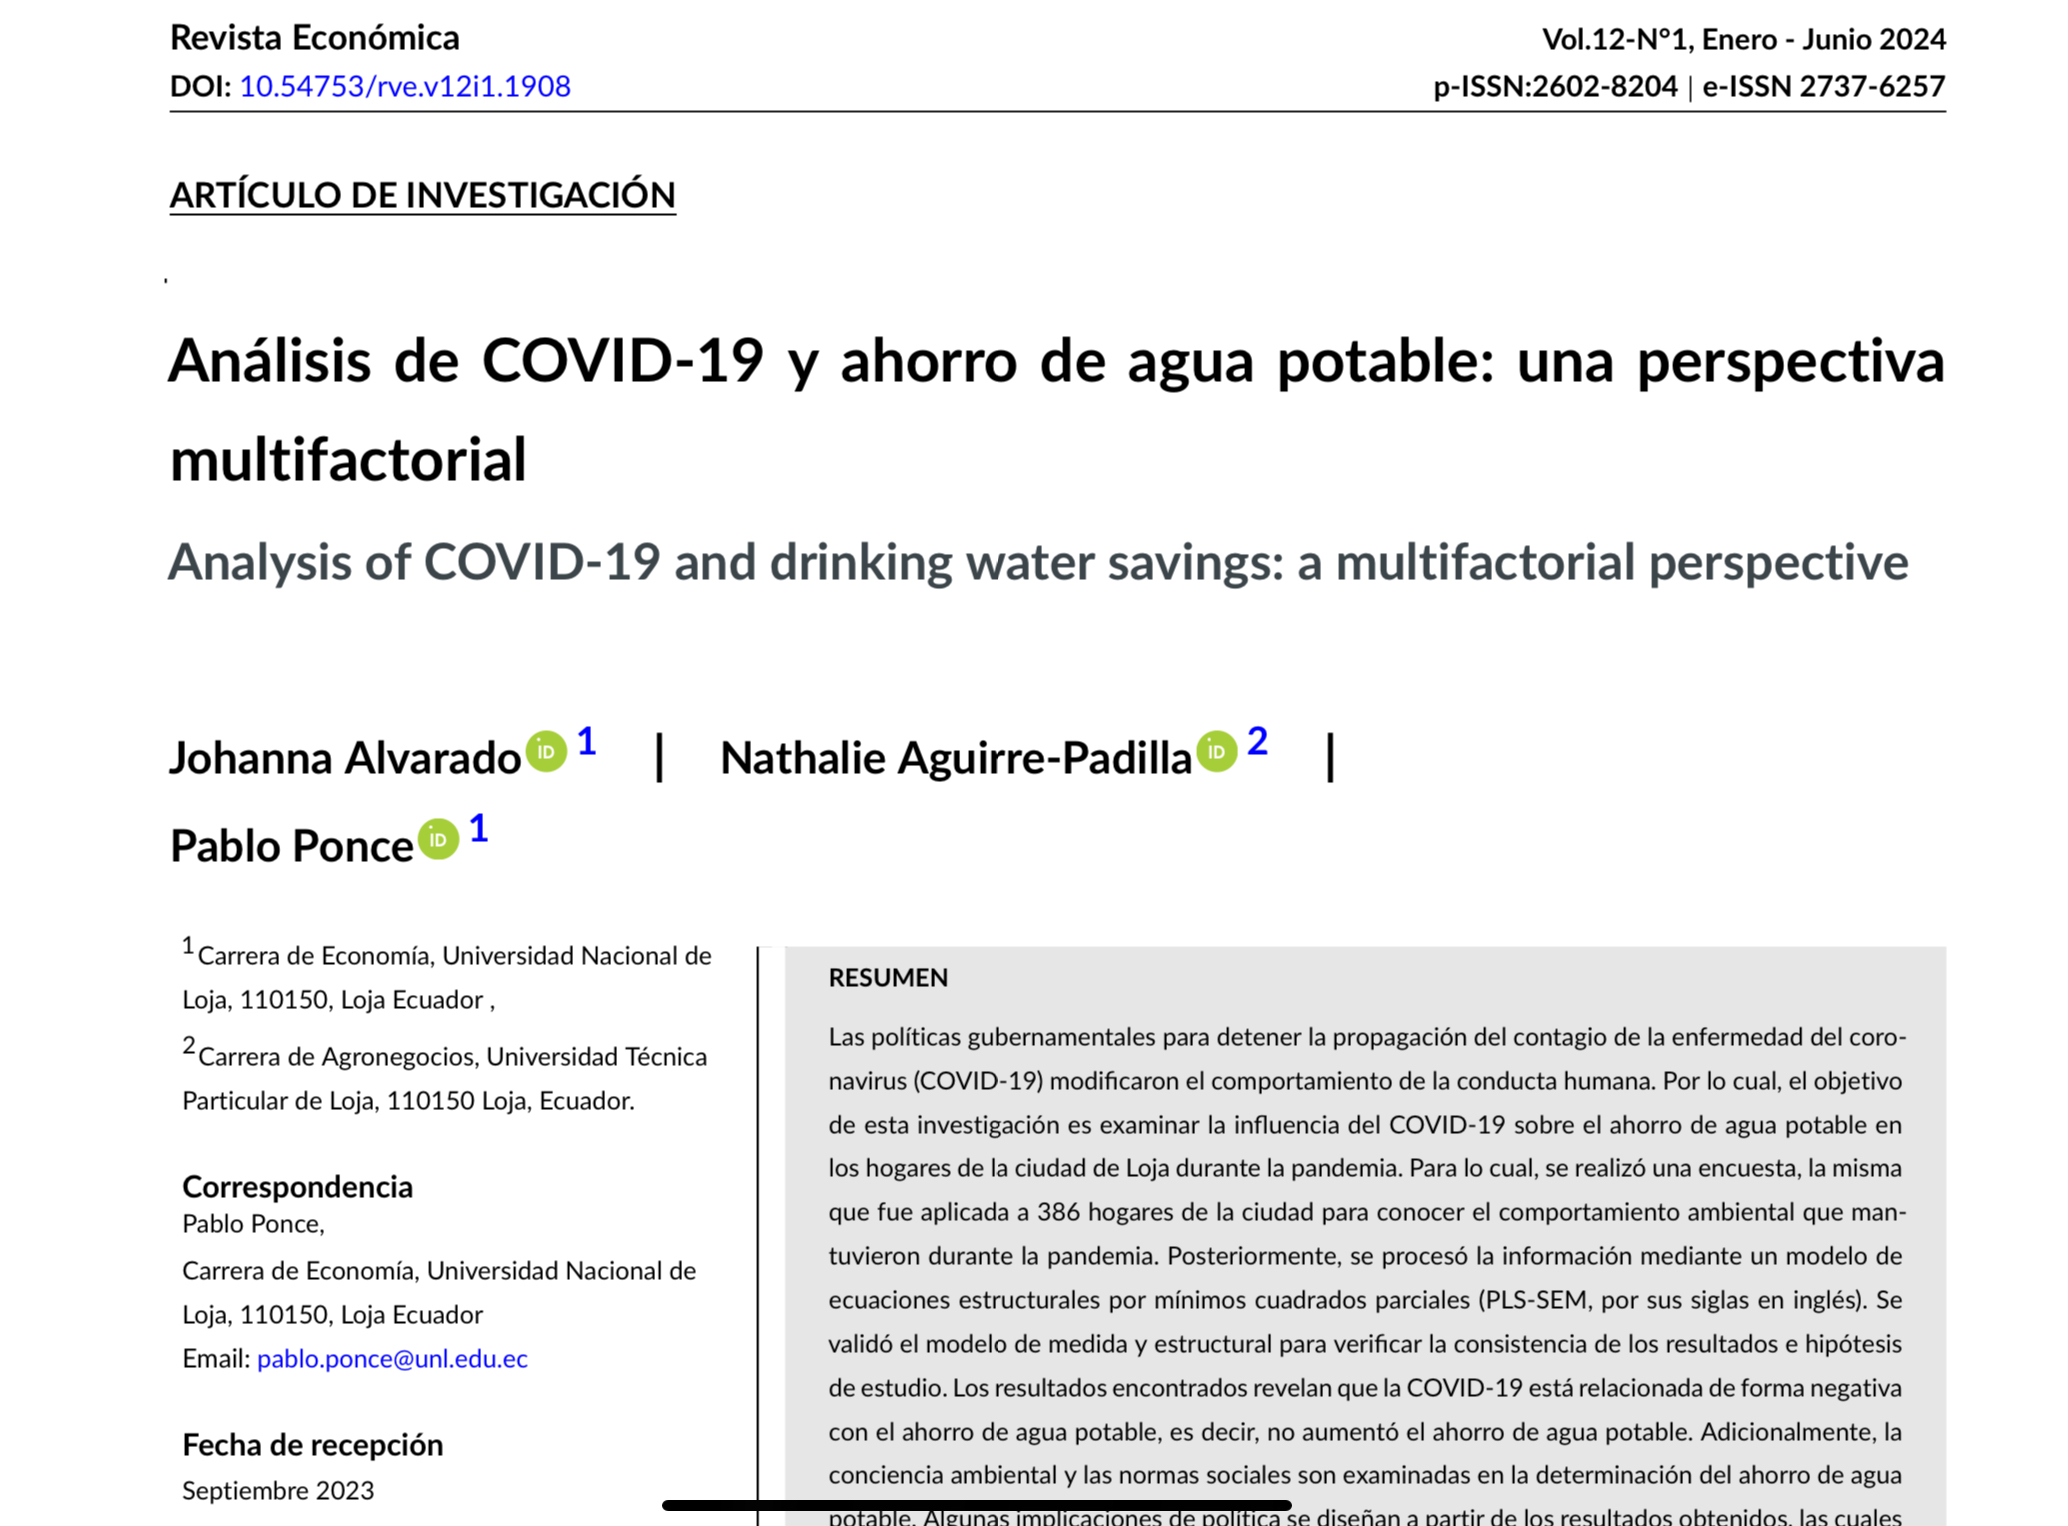 Análisis de COVID-19 y ahorro de agua potable: una perspectiva multifactorial (Revista Económica)